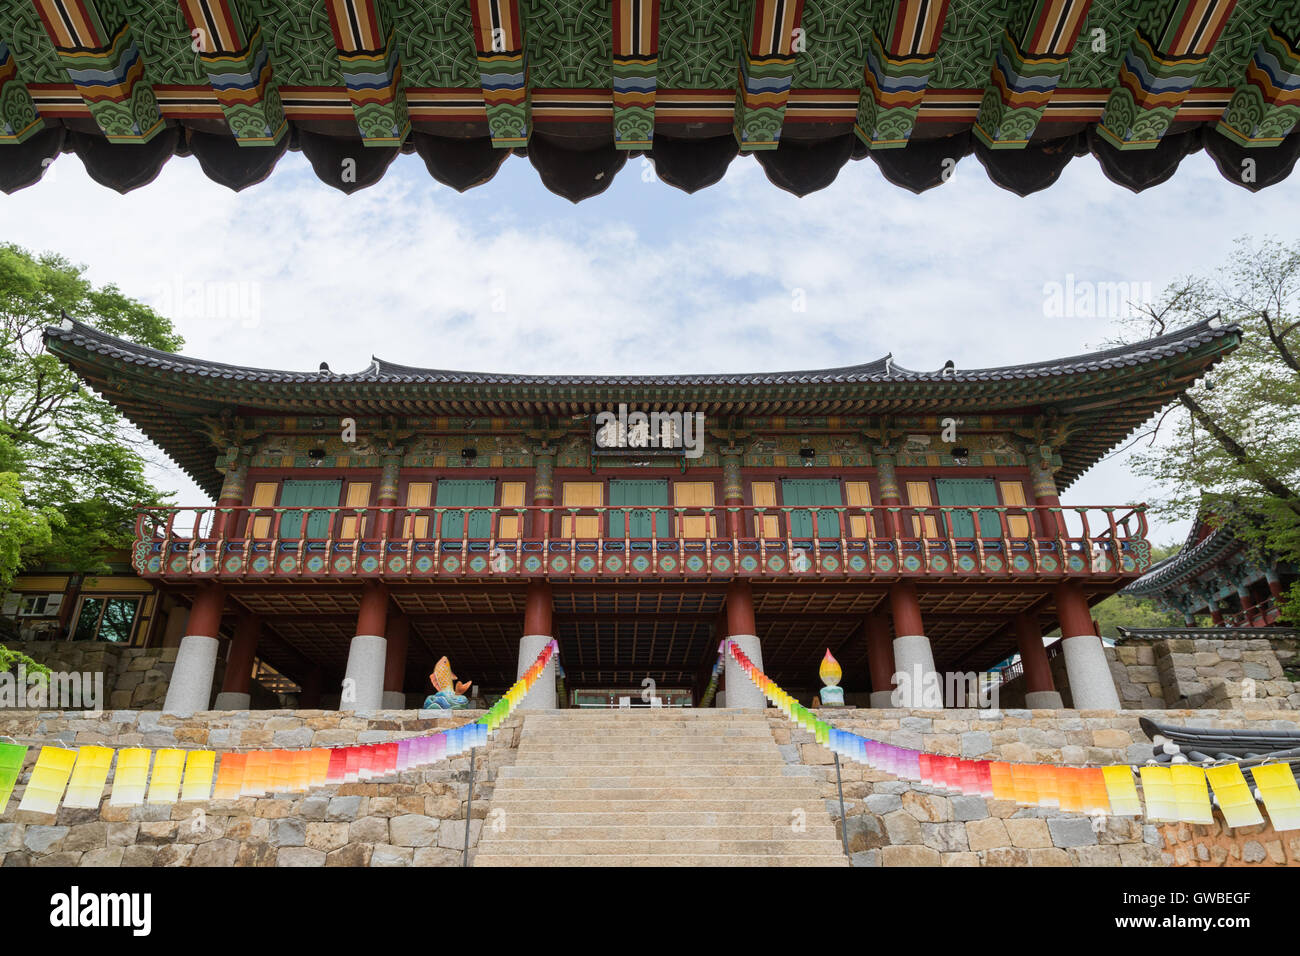 Dach und bunten Laternen im Bojeru-Pavillon auf der Beomeosa Tempel in Busan, Südkorea, betrachtet von vorne und unten. Stockfoto